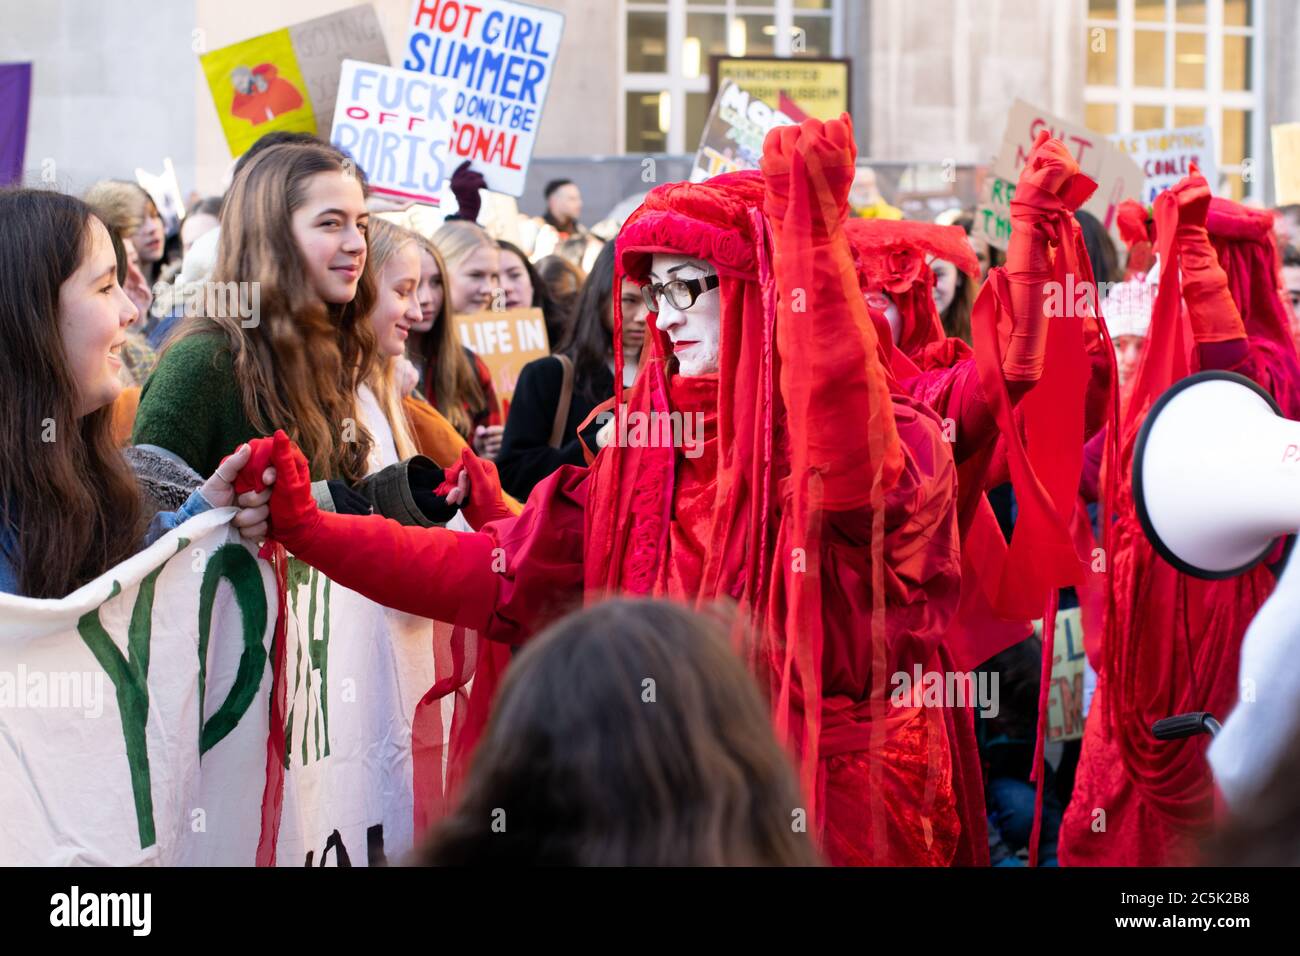 Grève mondiale du climat à la place St Peter, Manchester, Royaume-Uni. Rébellion d'extinction les rebelles invisibles rouges du cirque tiennent les mains des manifestants lorsqu'ils marchent Banque D'Images